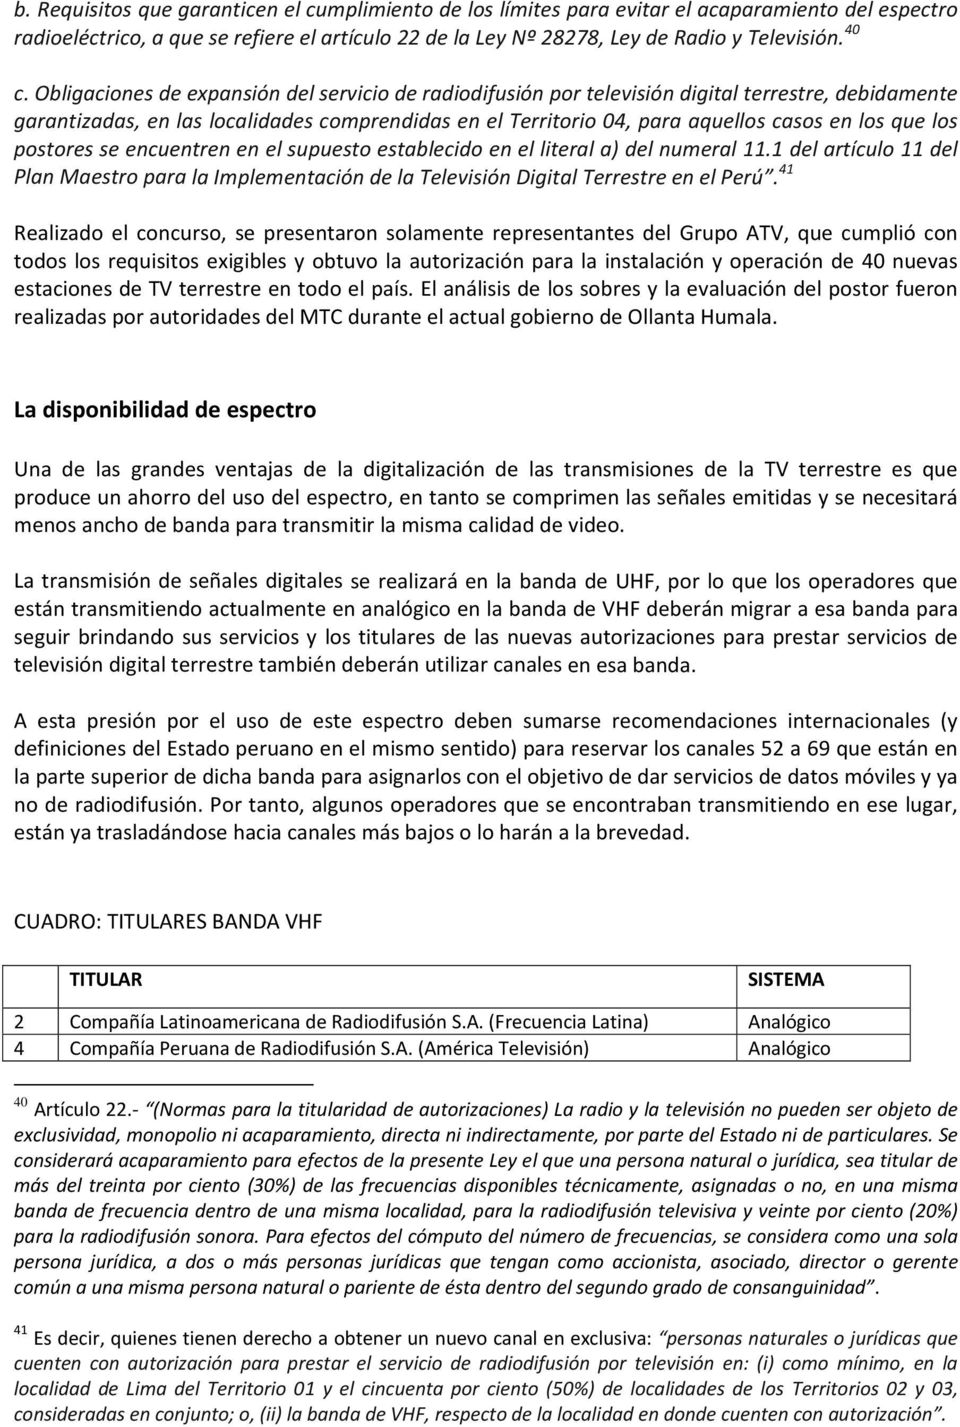 los que los postores se encuentren en el supuesto establecido en el literal a) del numeral 11.1 del artículo 11 del Plan Maestro para la Implementación de la Televisión Digital Terrestre en el Perú.